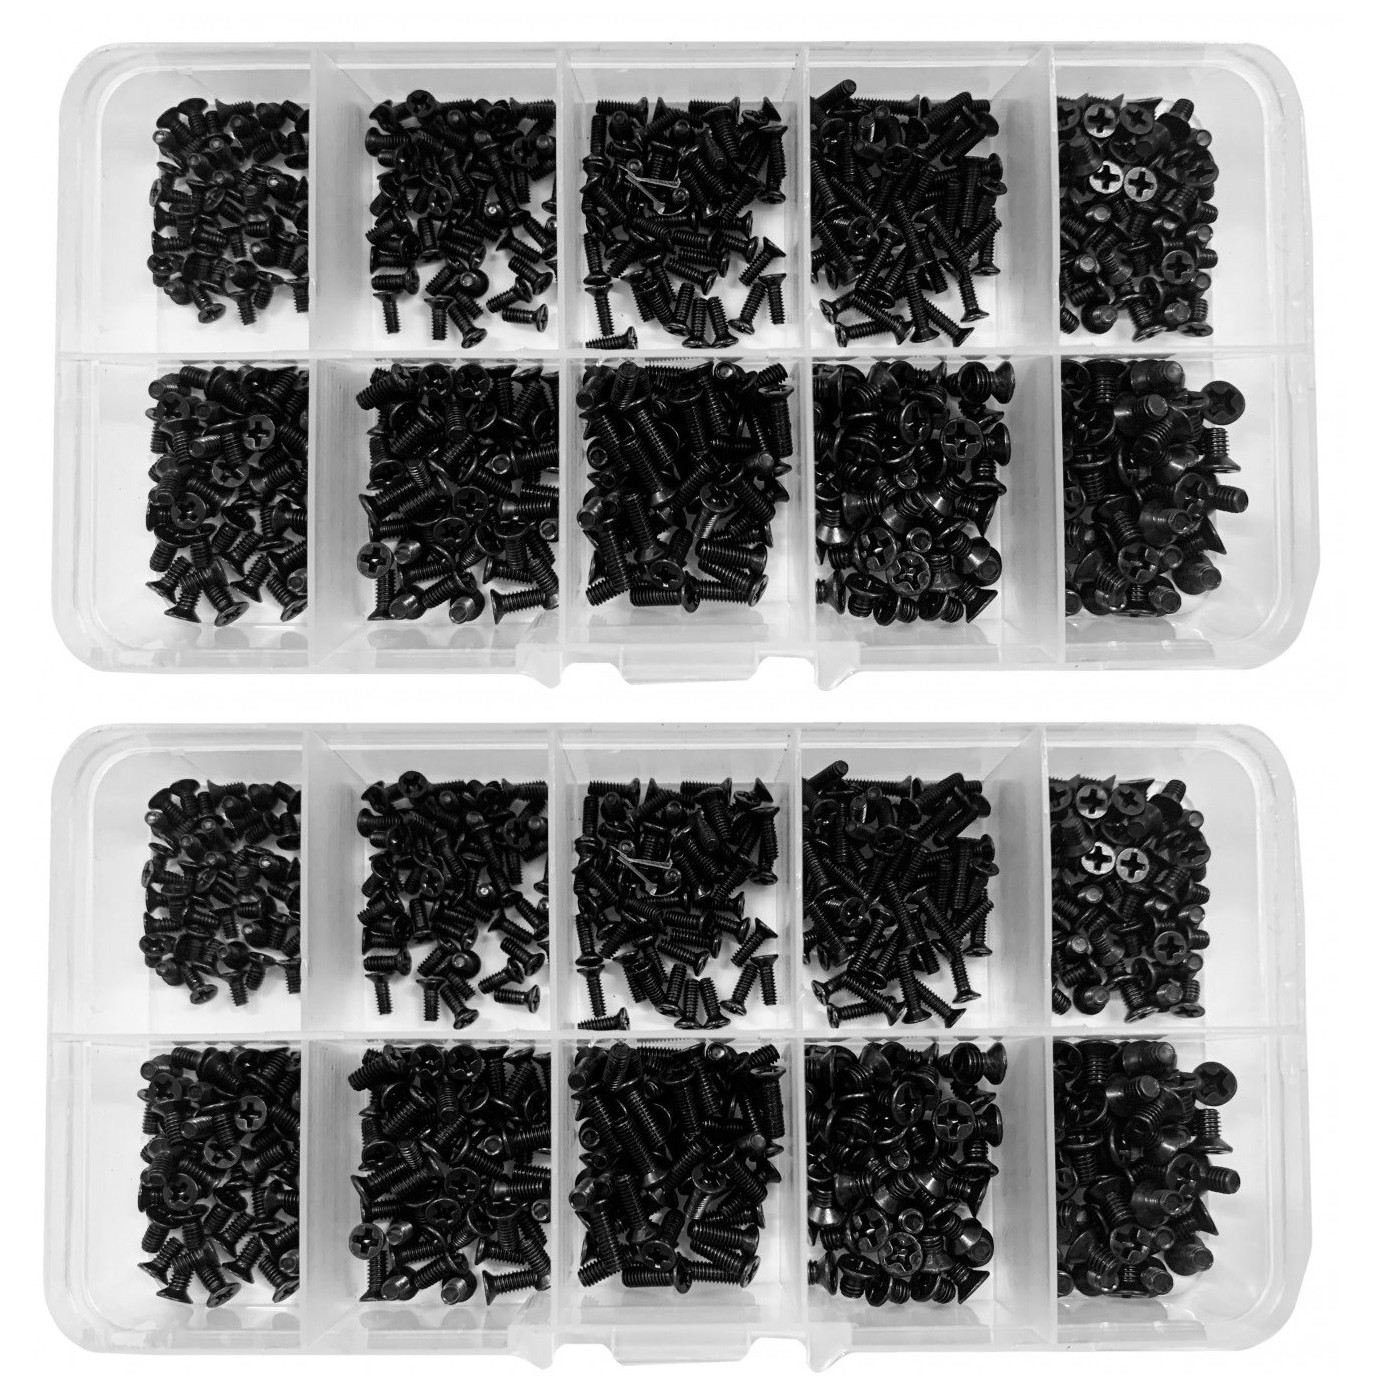 Jeu de 1000 petits boulons noirs (M2, M2,5 et M3, longueur 4-8